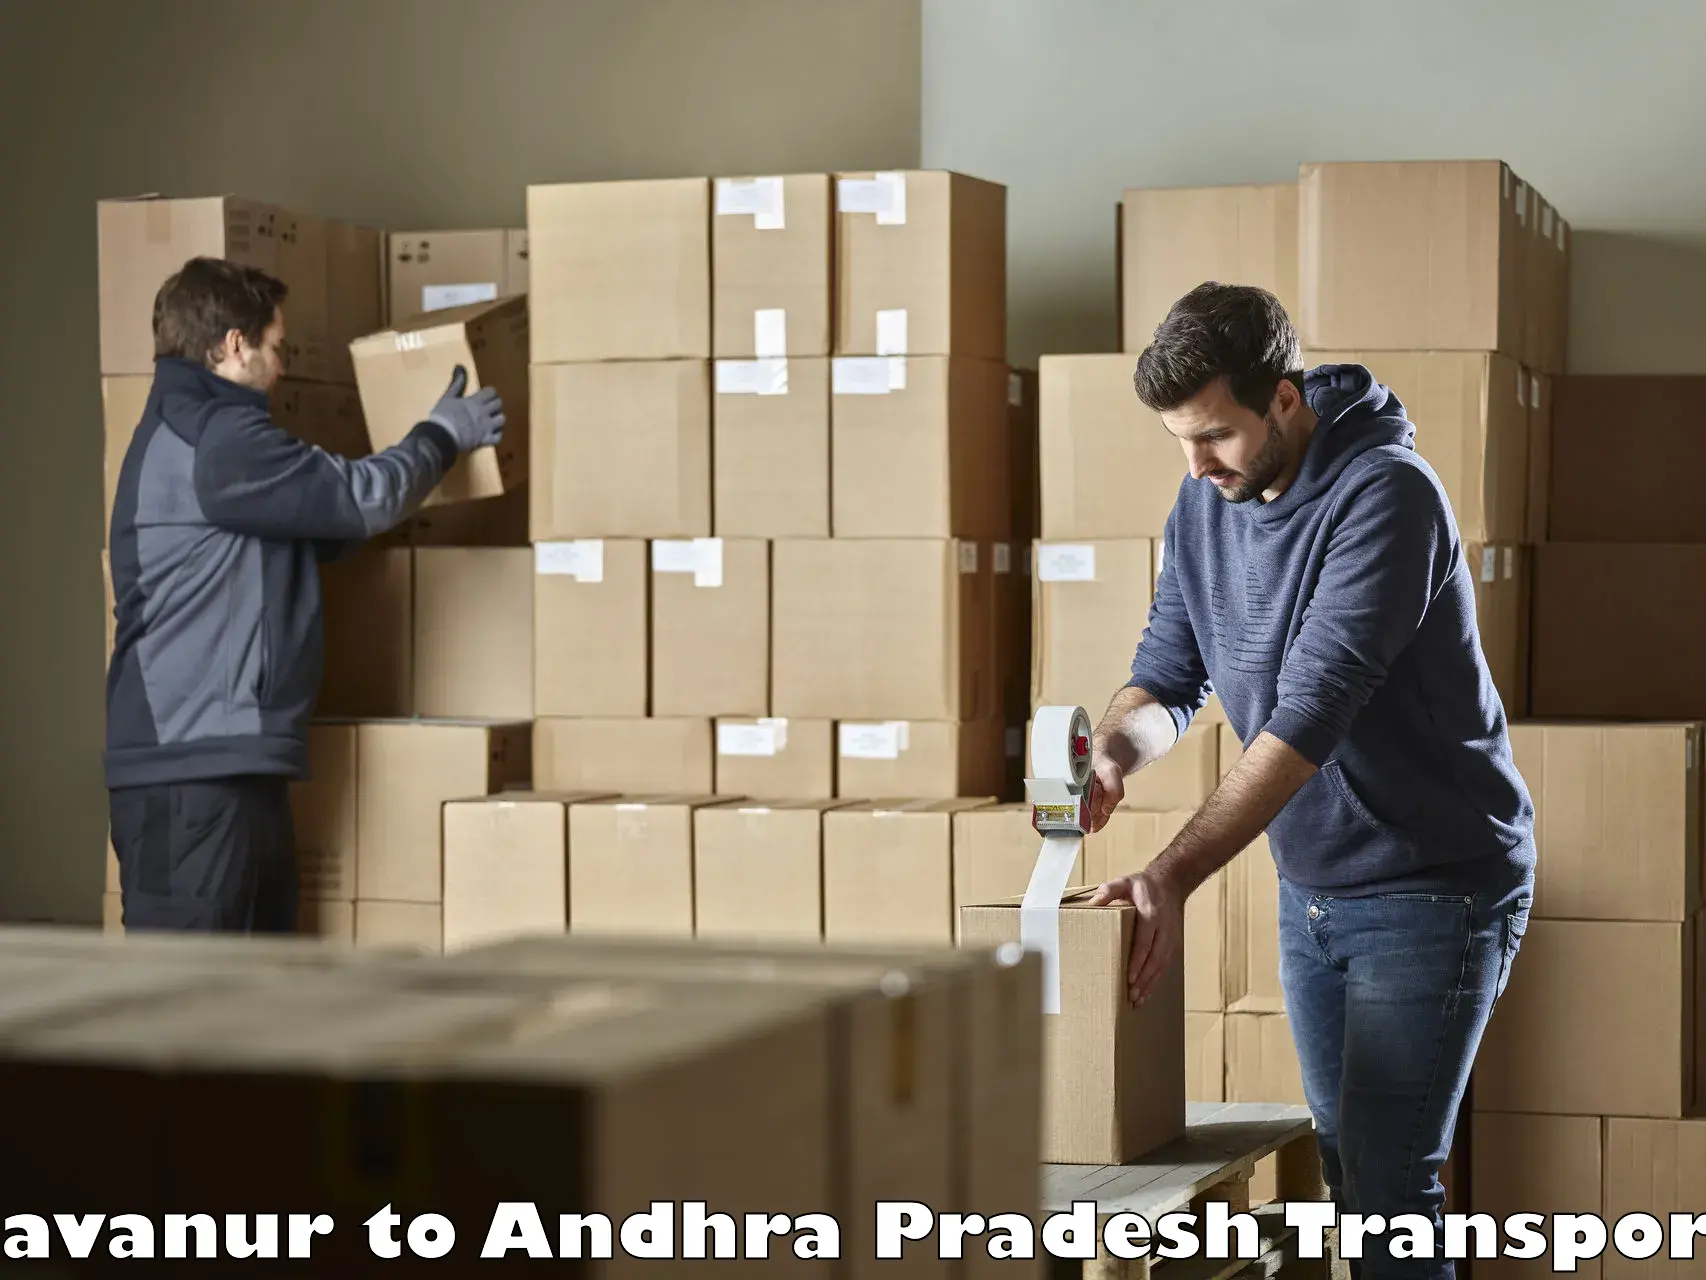 Nearby transport service Savanur to Andhra Pradesh